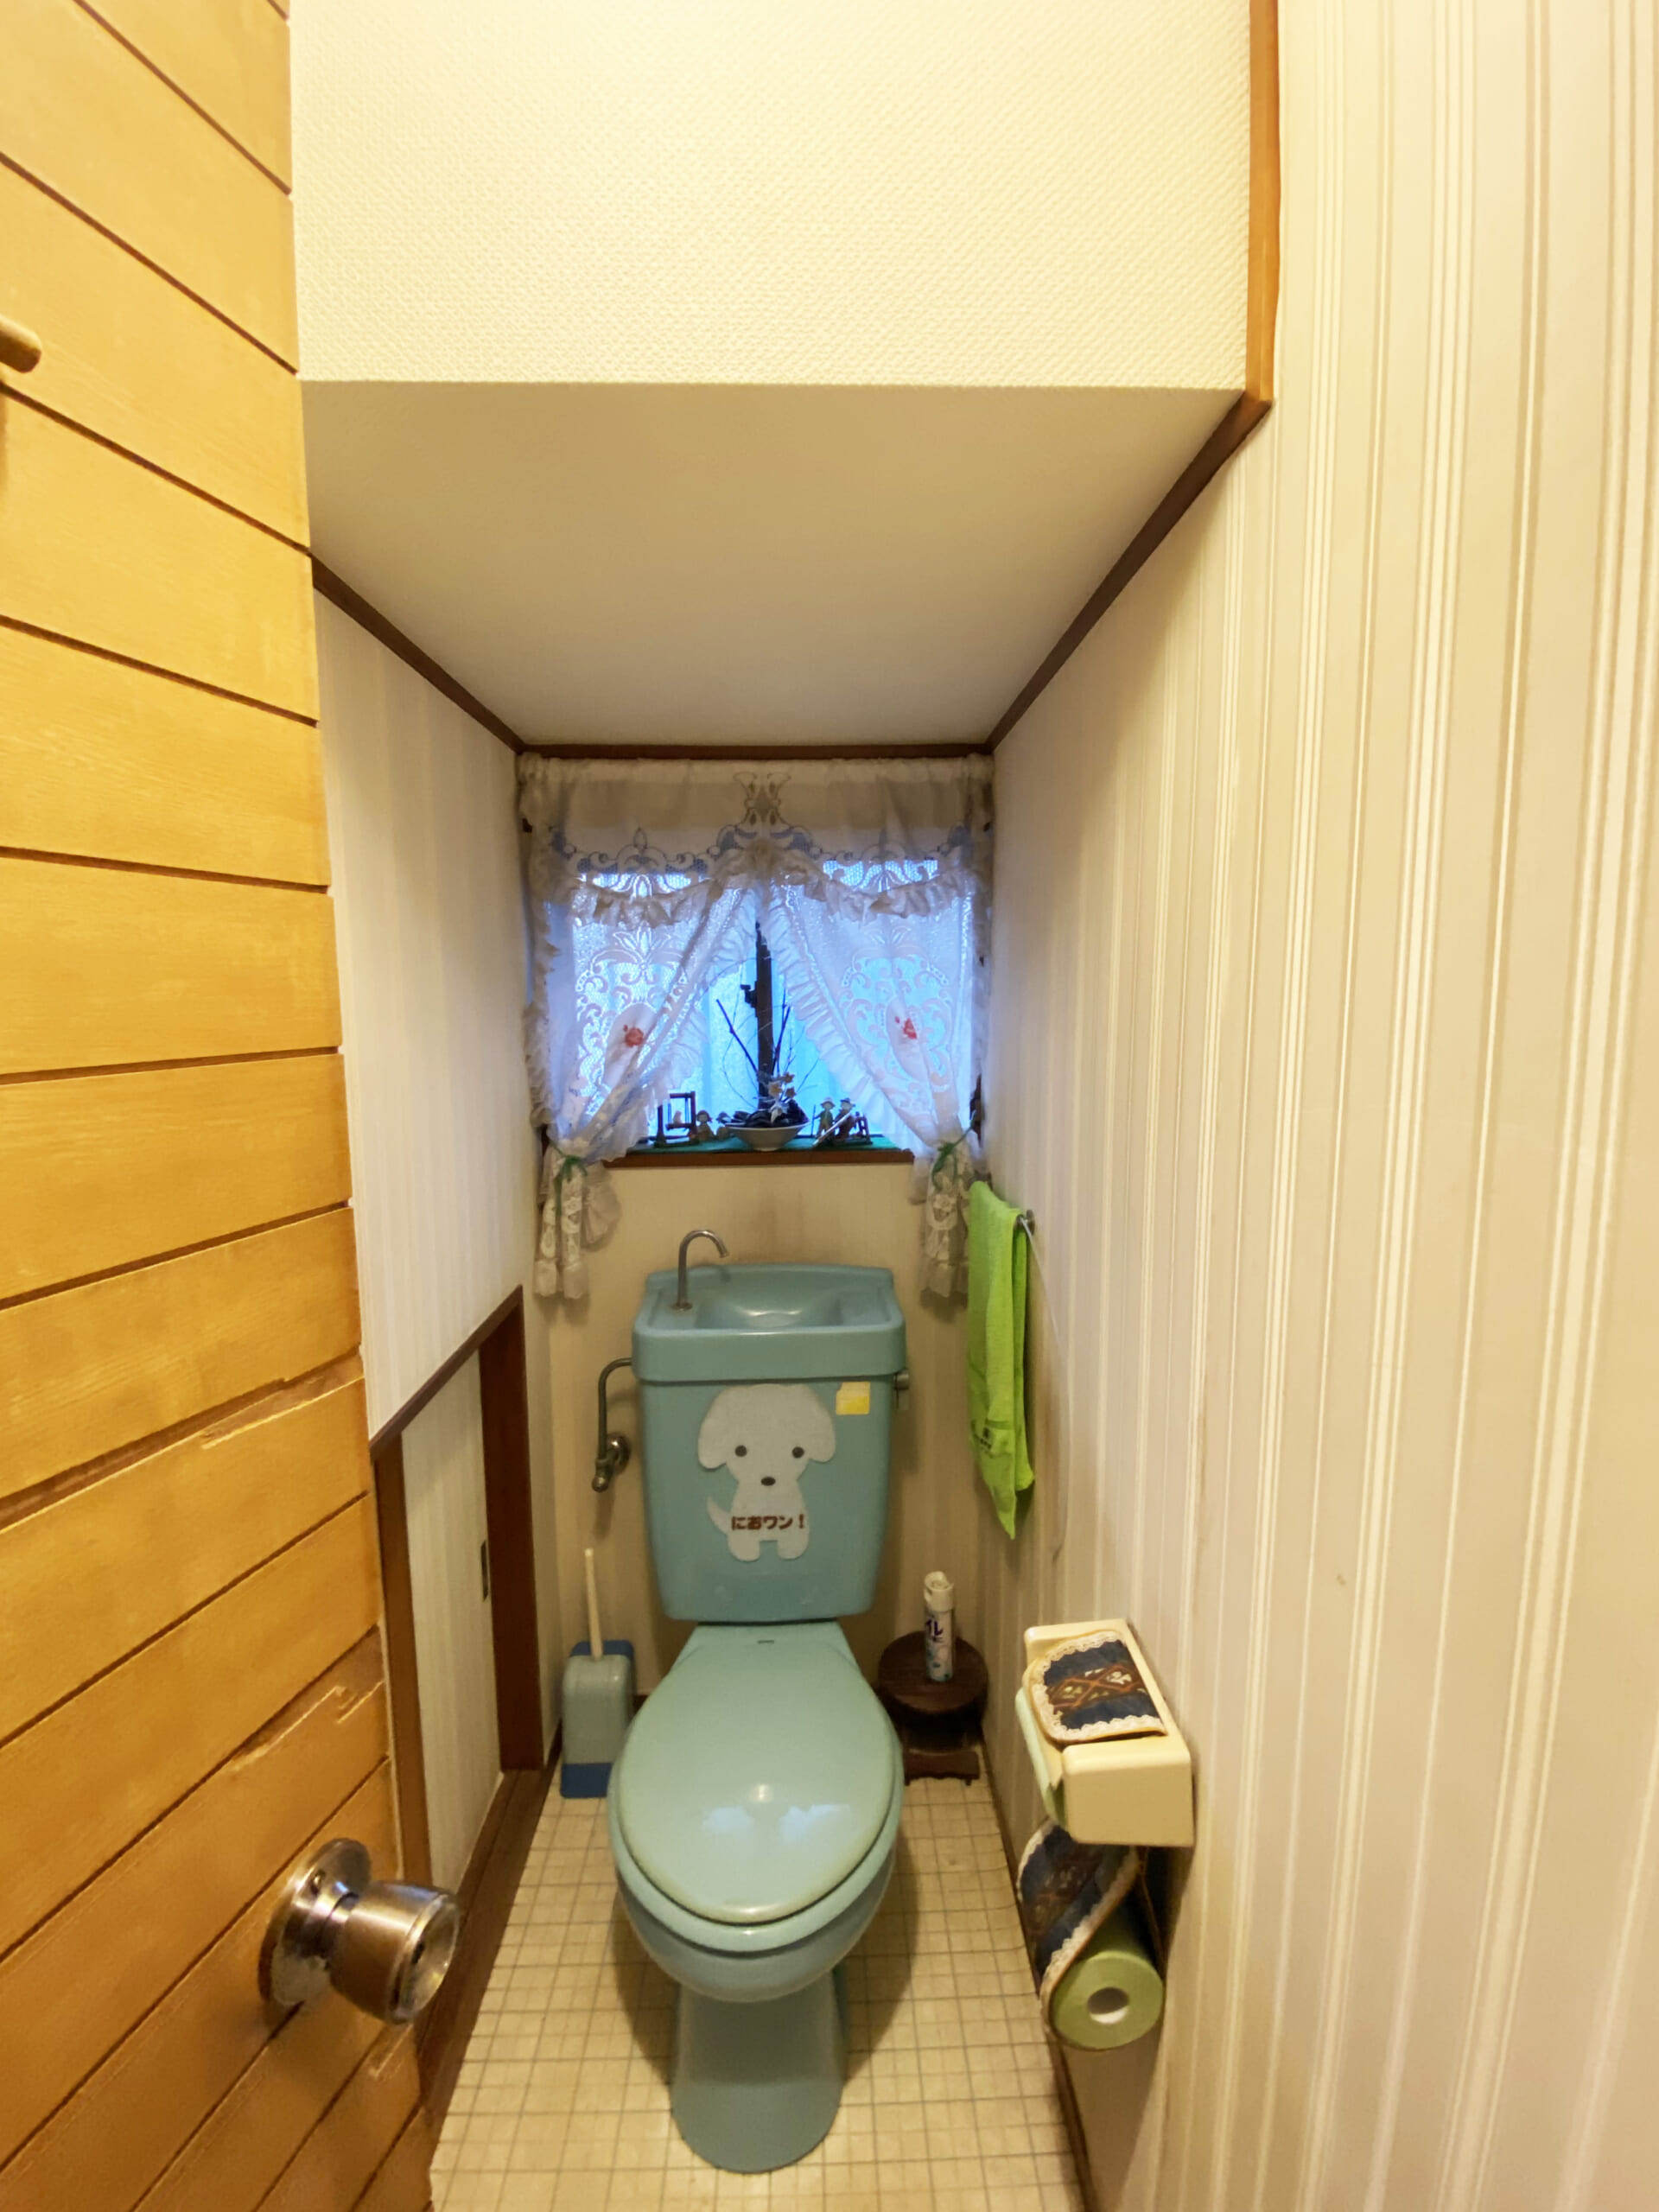 トイレのインテリアコーディネート インテリアコーディネーター三宅利佳のブログ